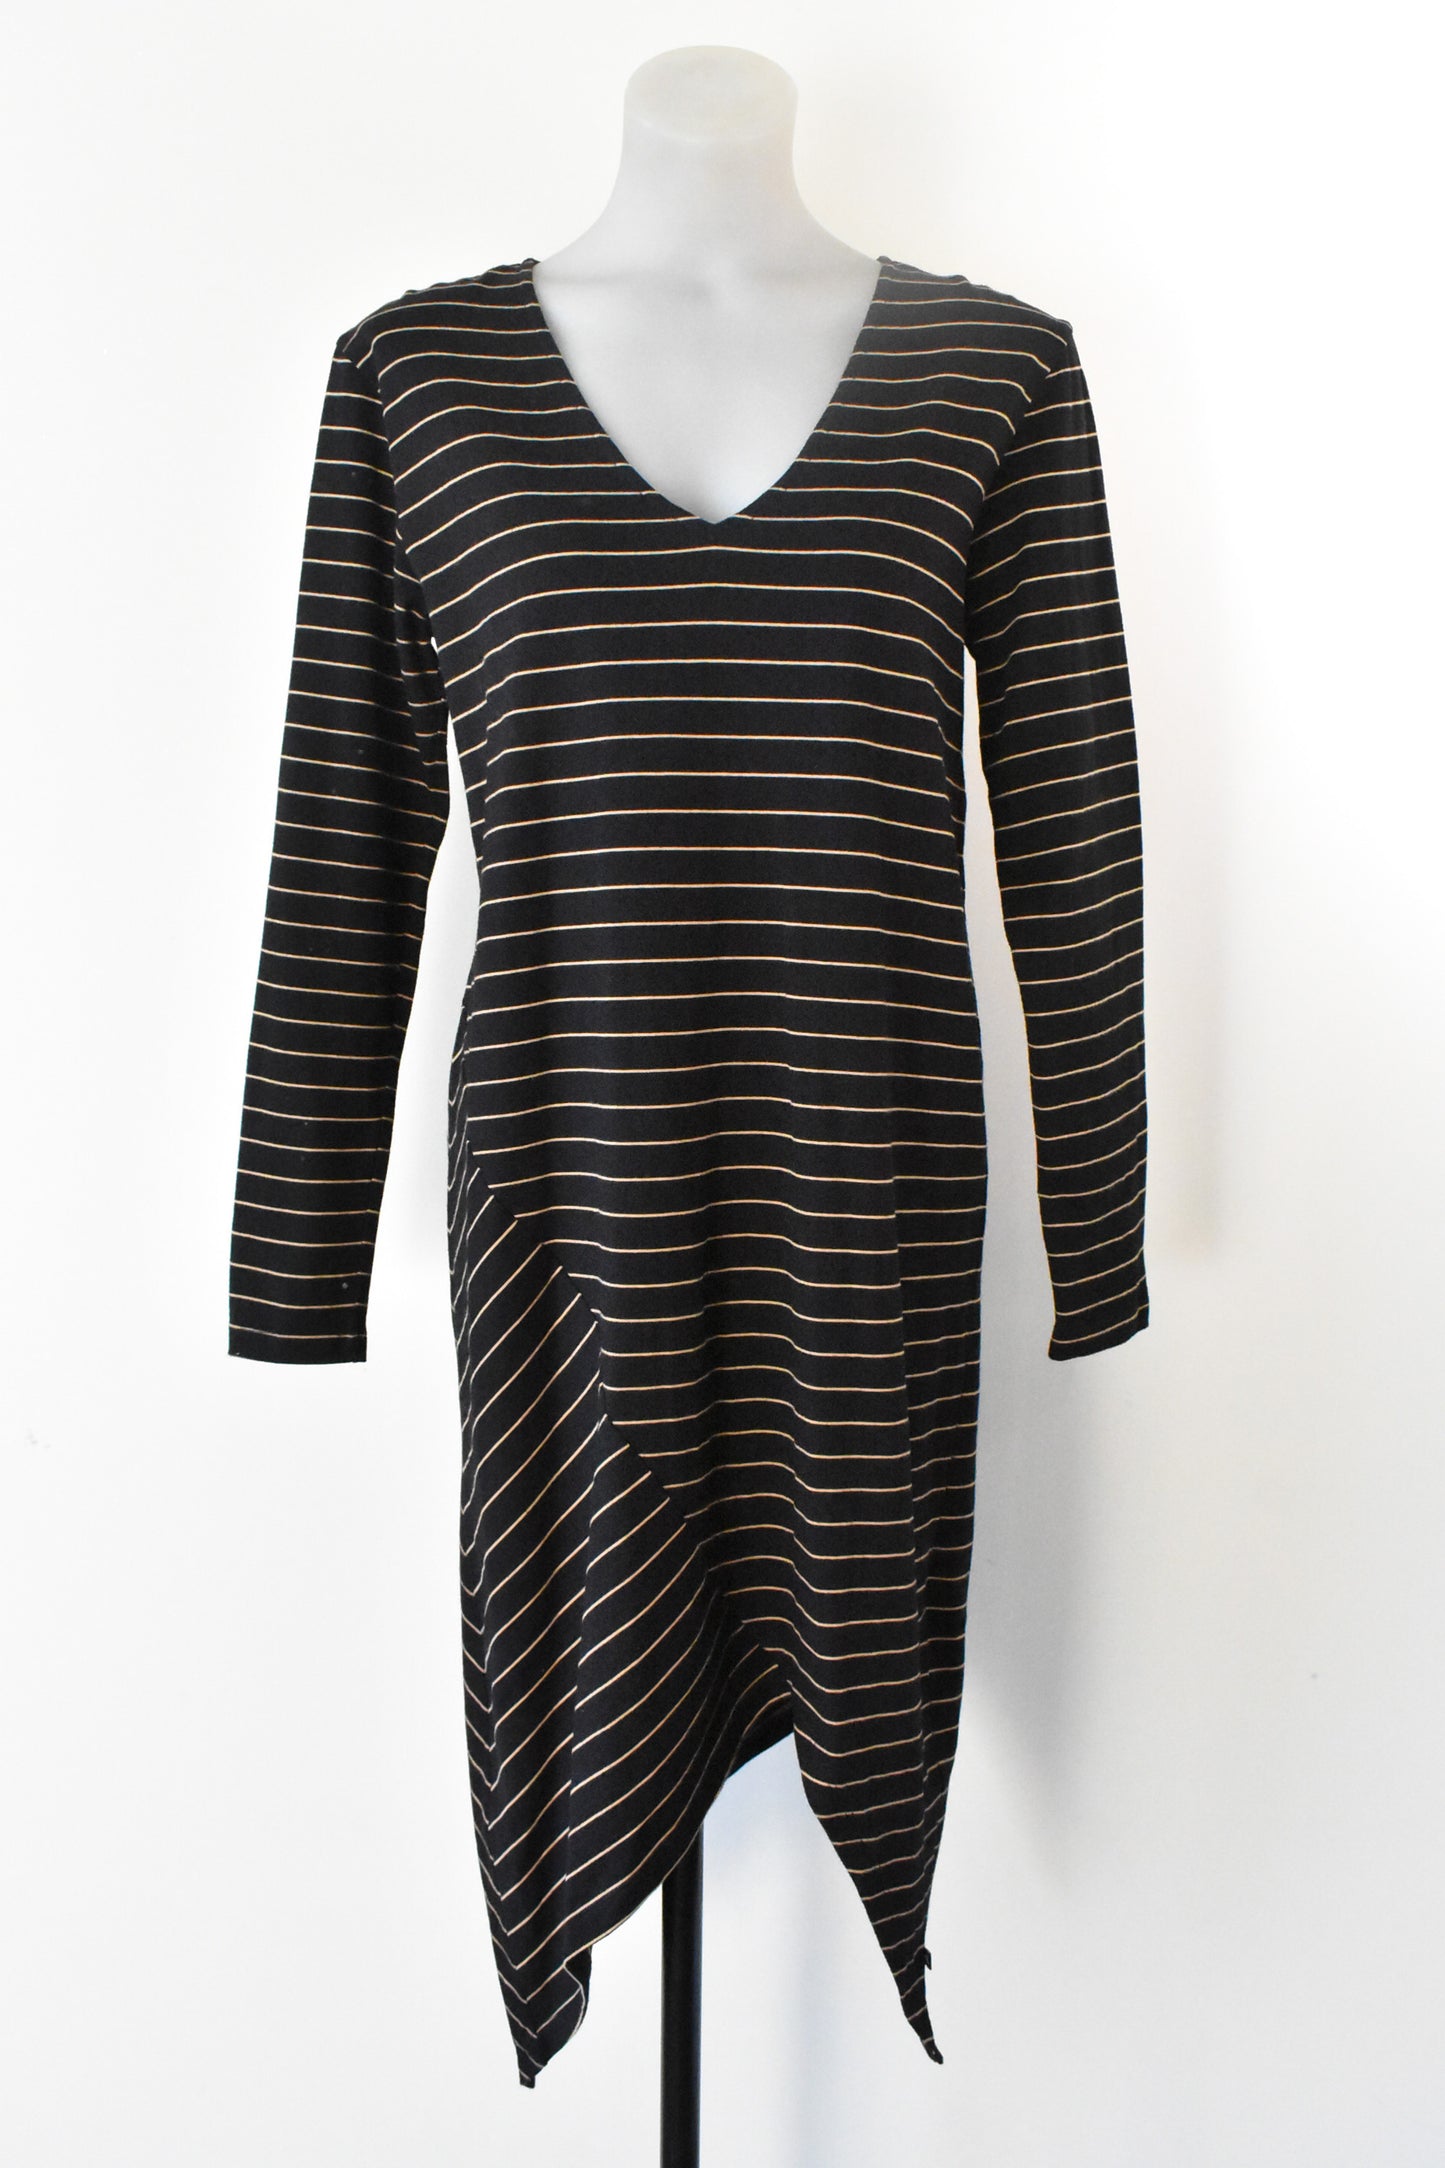 Moochi black & tan 100% cotton asymmetric dress, size S